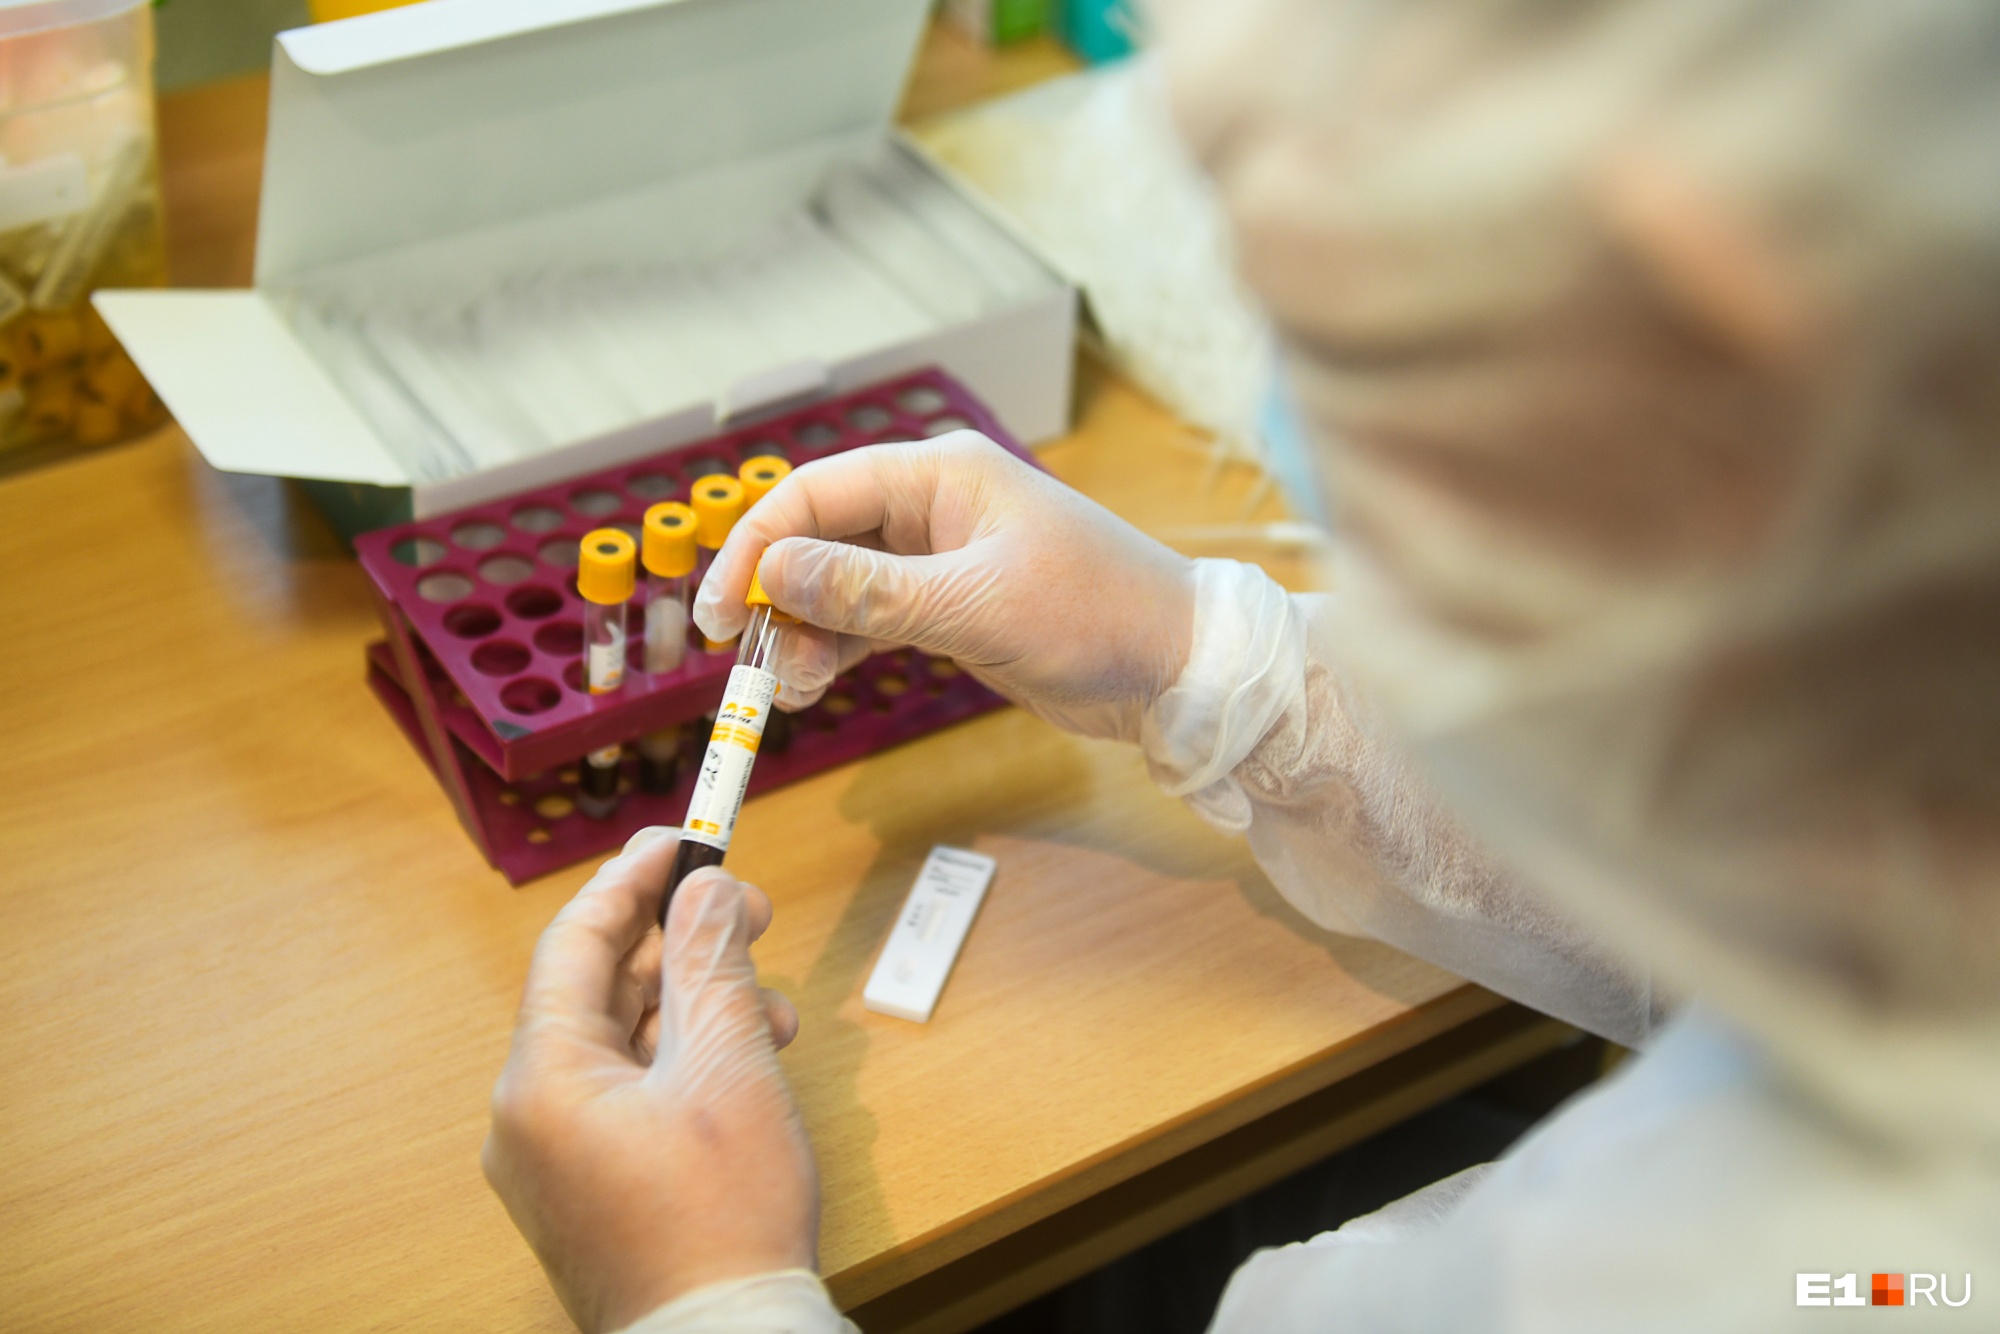 Екатеринбургский эксперт рассказал, что человек может заразиться сразу двумя штаммами коронавируса